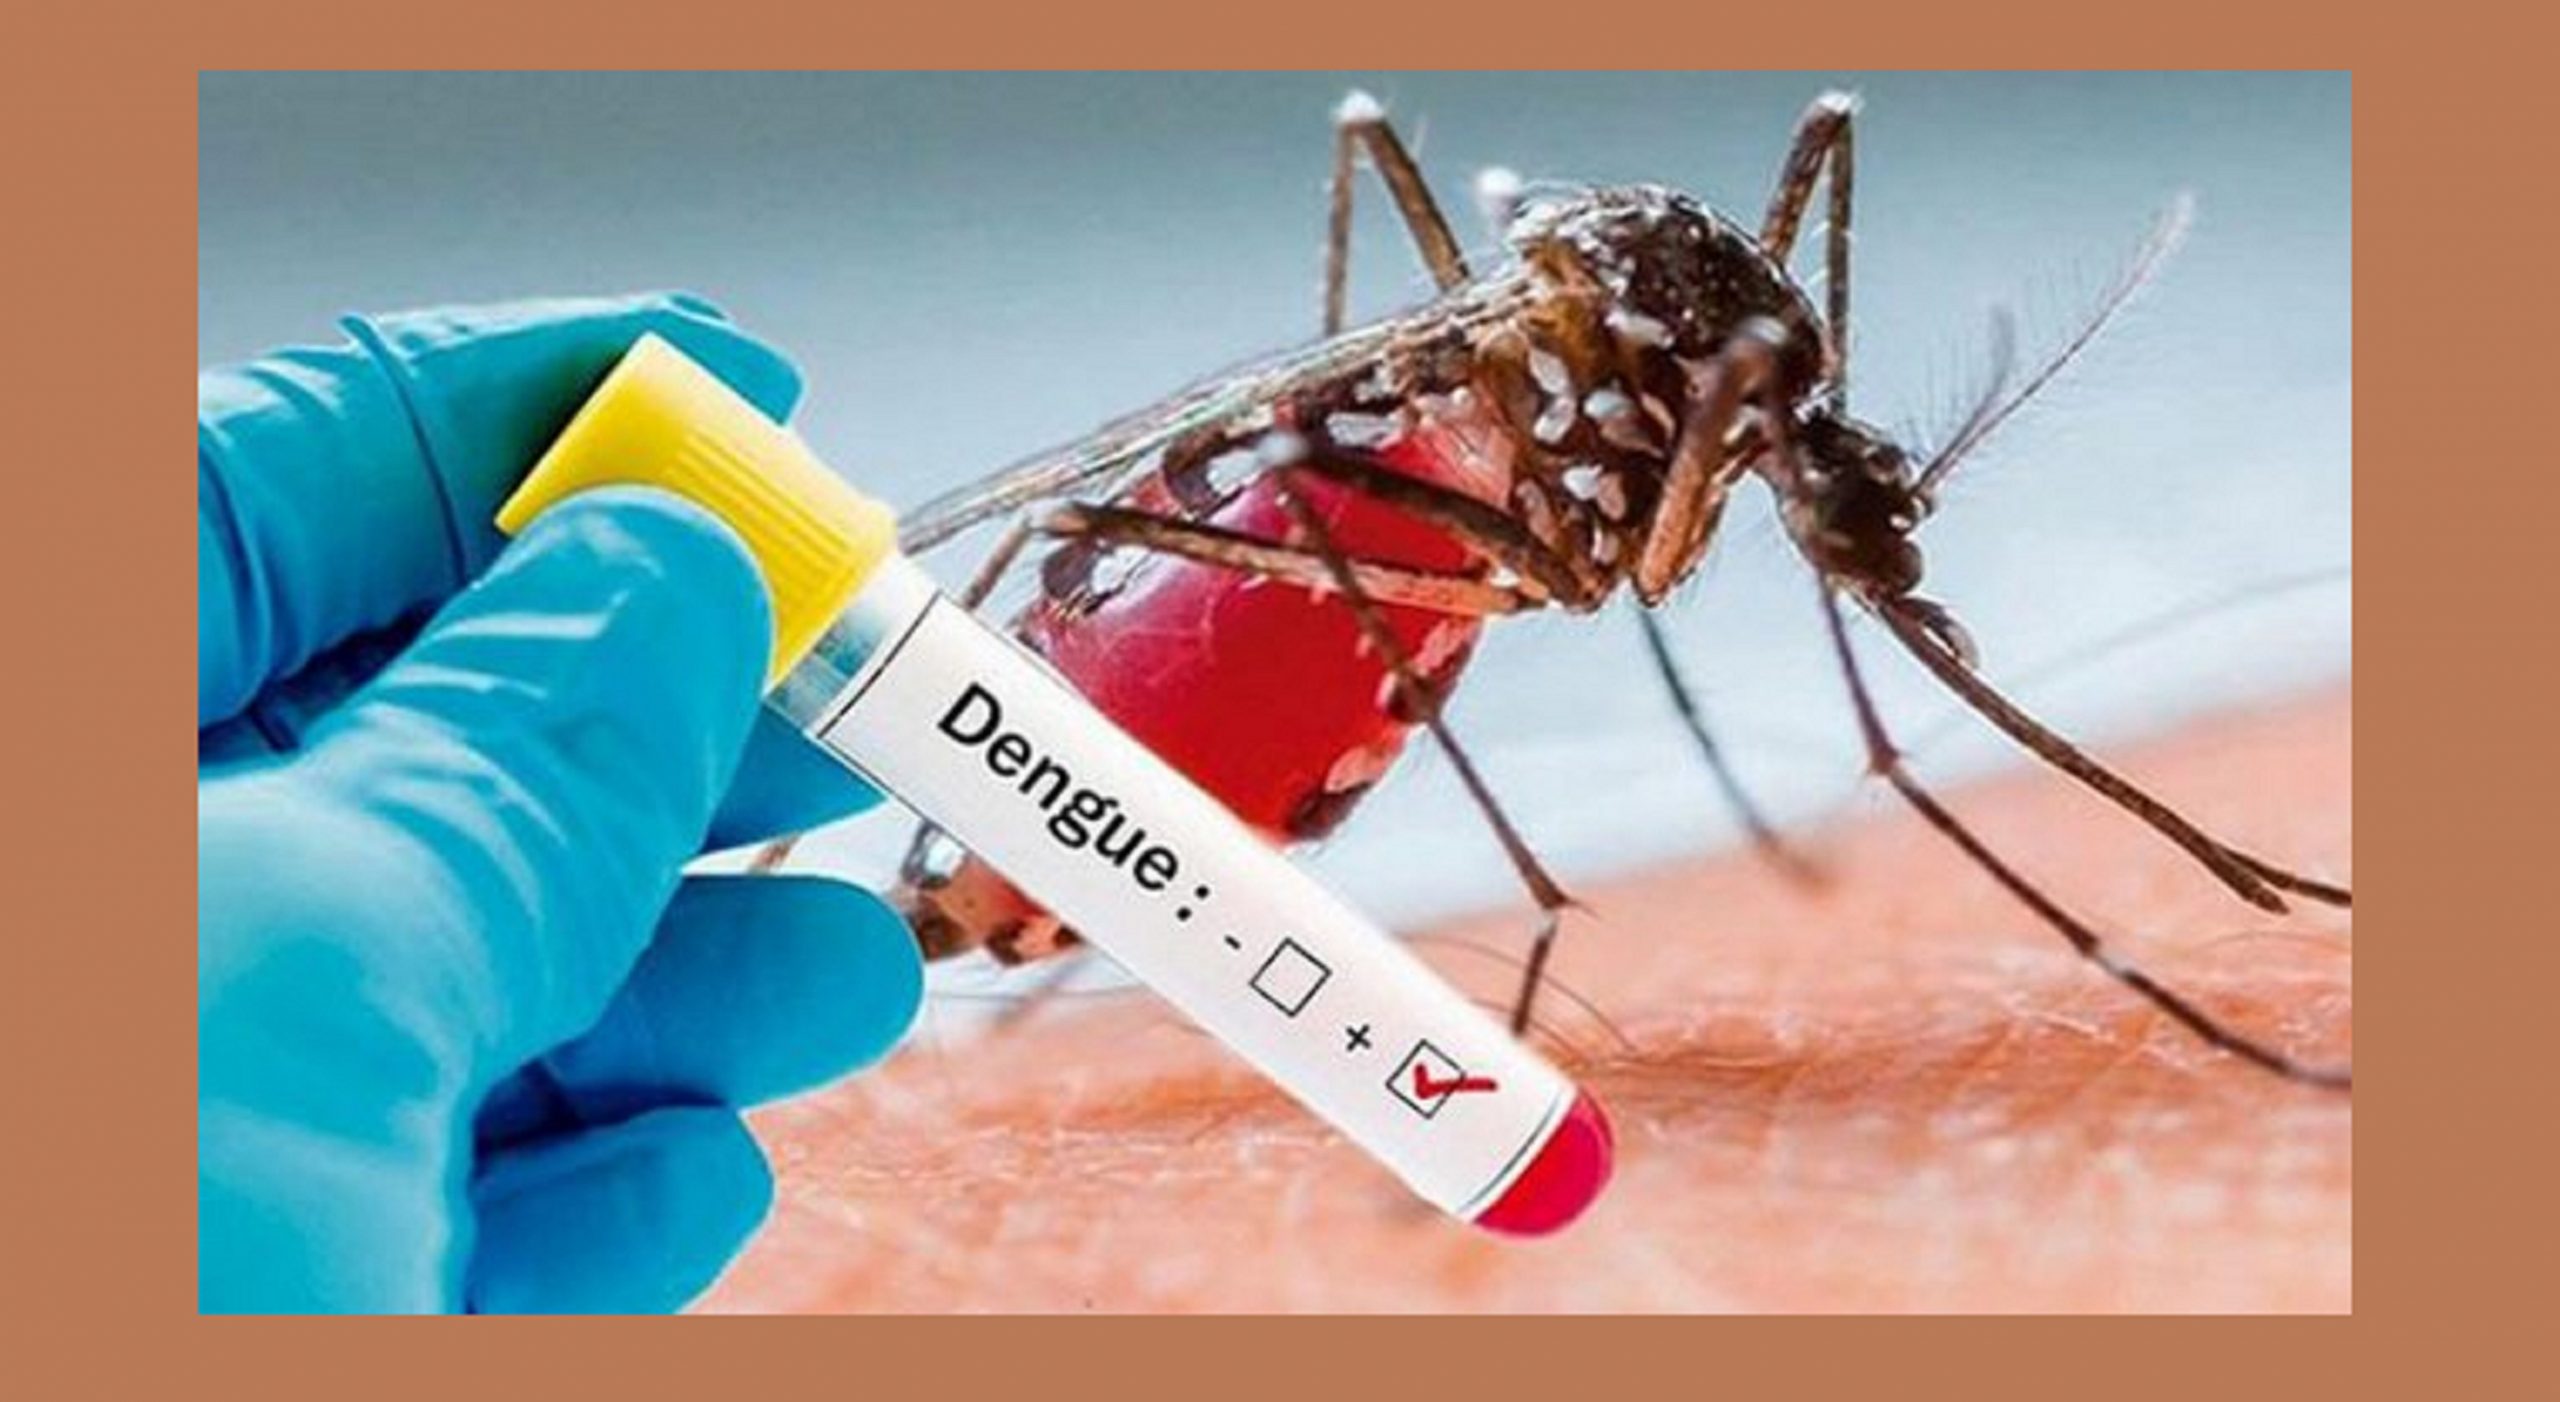 वीरेन्द्रनगरका ३३ जनामा डेंगु रोगको संक्रमण